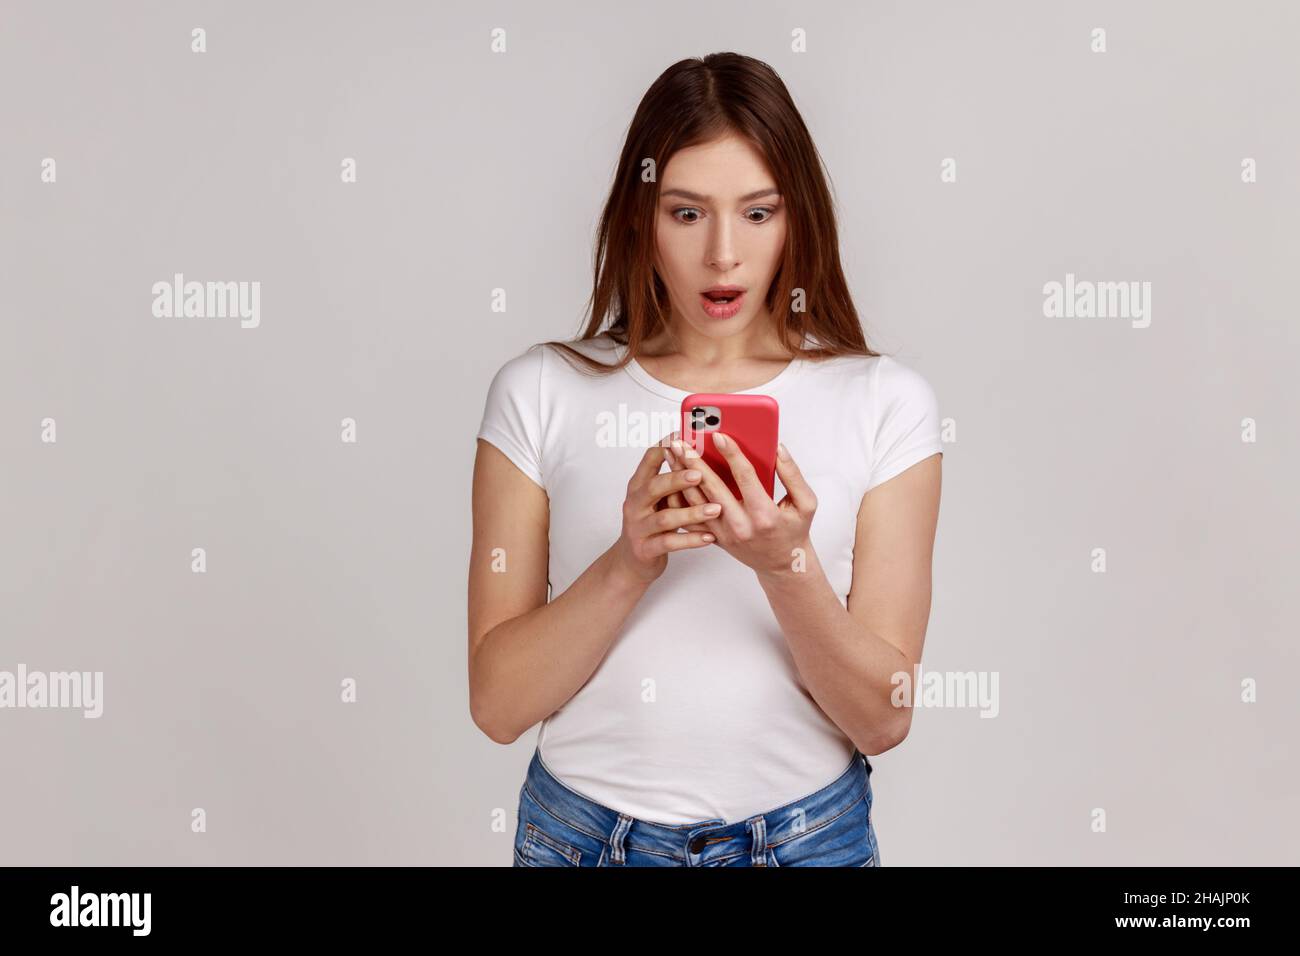 Porträt einer schockierten, erstaunten Frau, die per Handy einen Beitrag in einem sozialen Netzwerk liest, chattet, überrascht aussieht und ein weißes T-Shirt trägt. Innenaufnahme des Studios isoliert auf grauem Hintergrund. Stockfoto